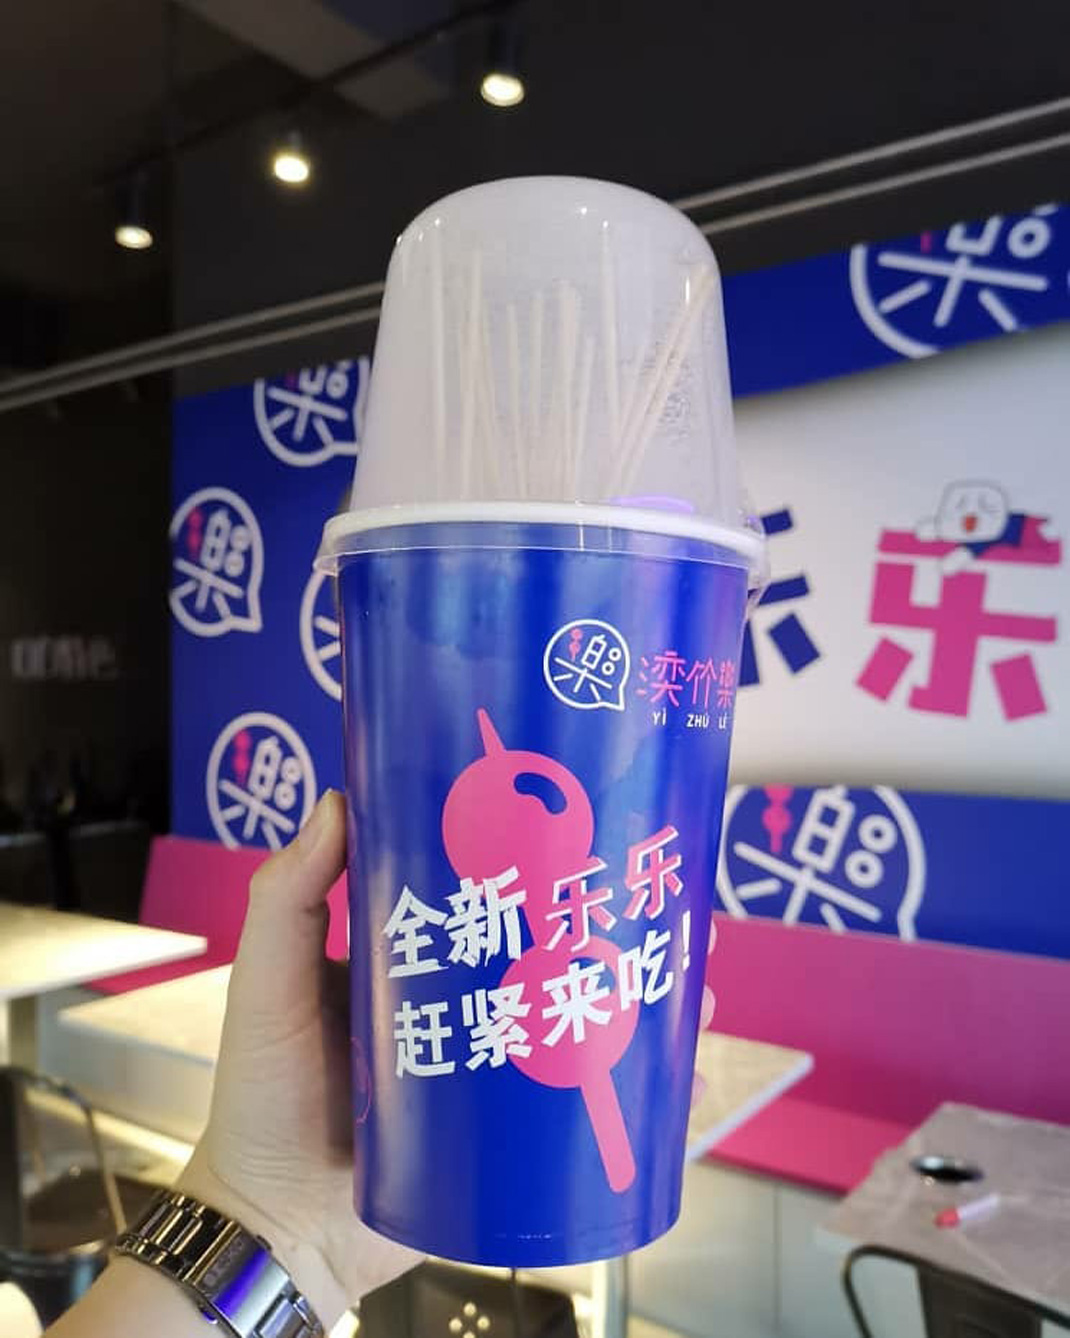 湙竹乐餐厅 中文 汉字 字体设计 logo设计 vi设计 空间设计 视觉餐饮